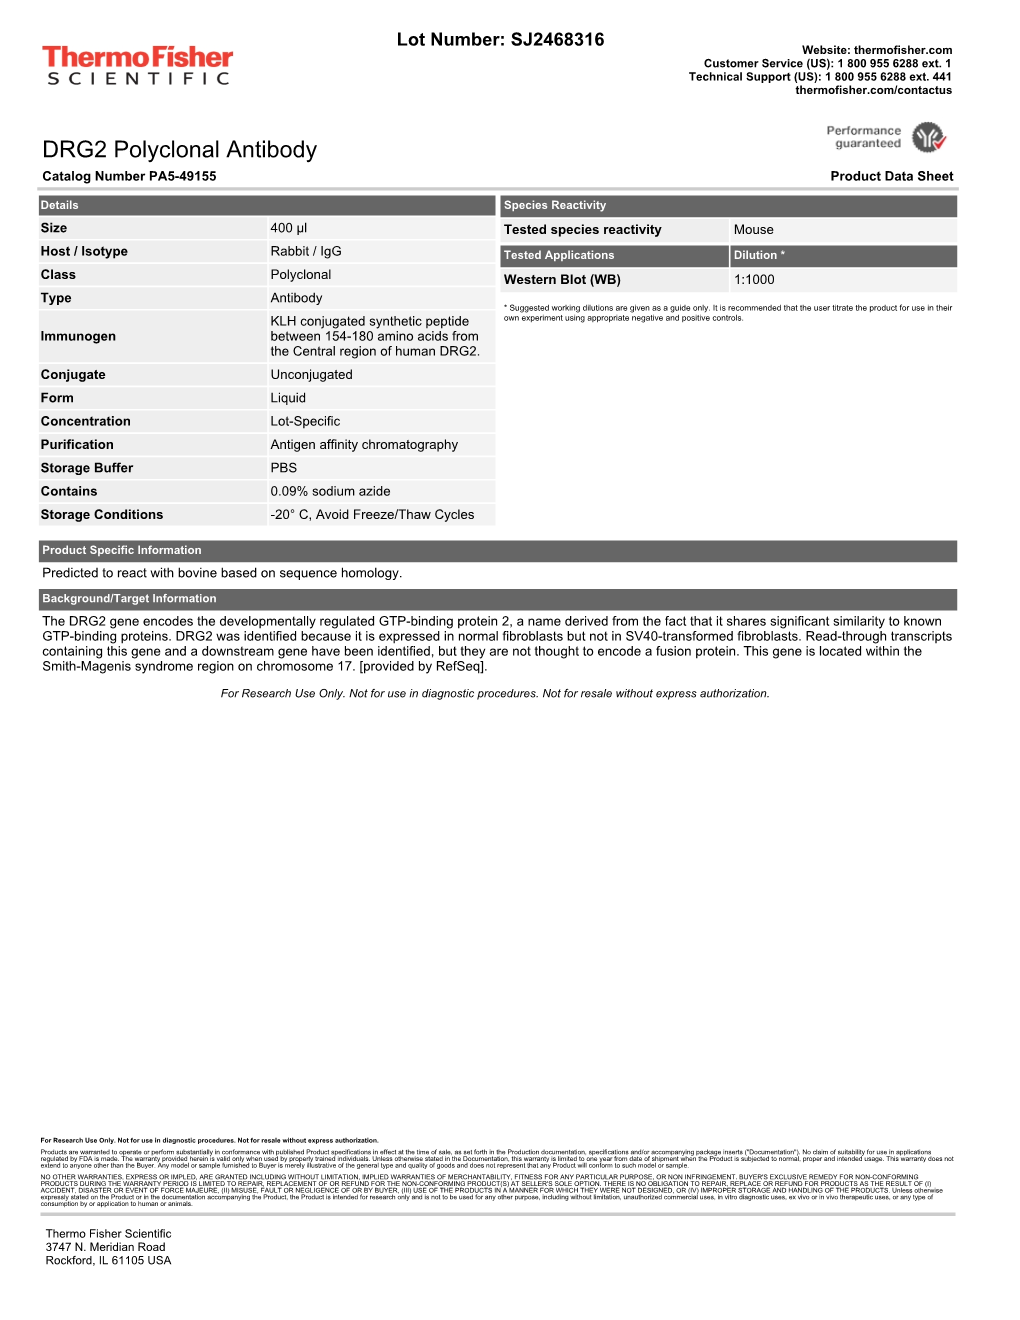 DRG2 Polyclonal Antibody Catalog Number PA5-49155 Product Data Sheet